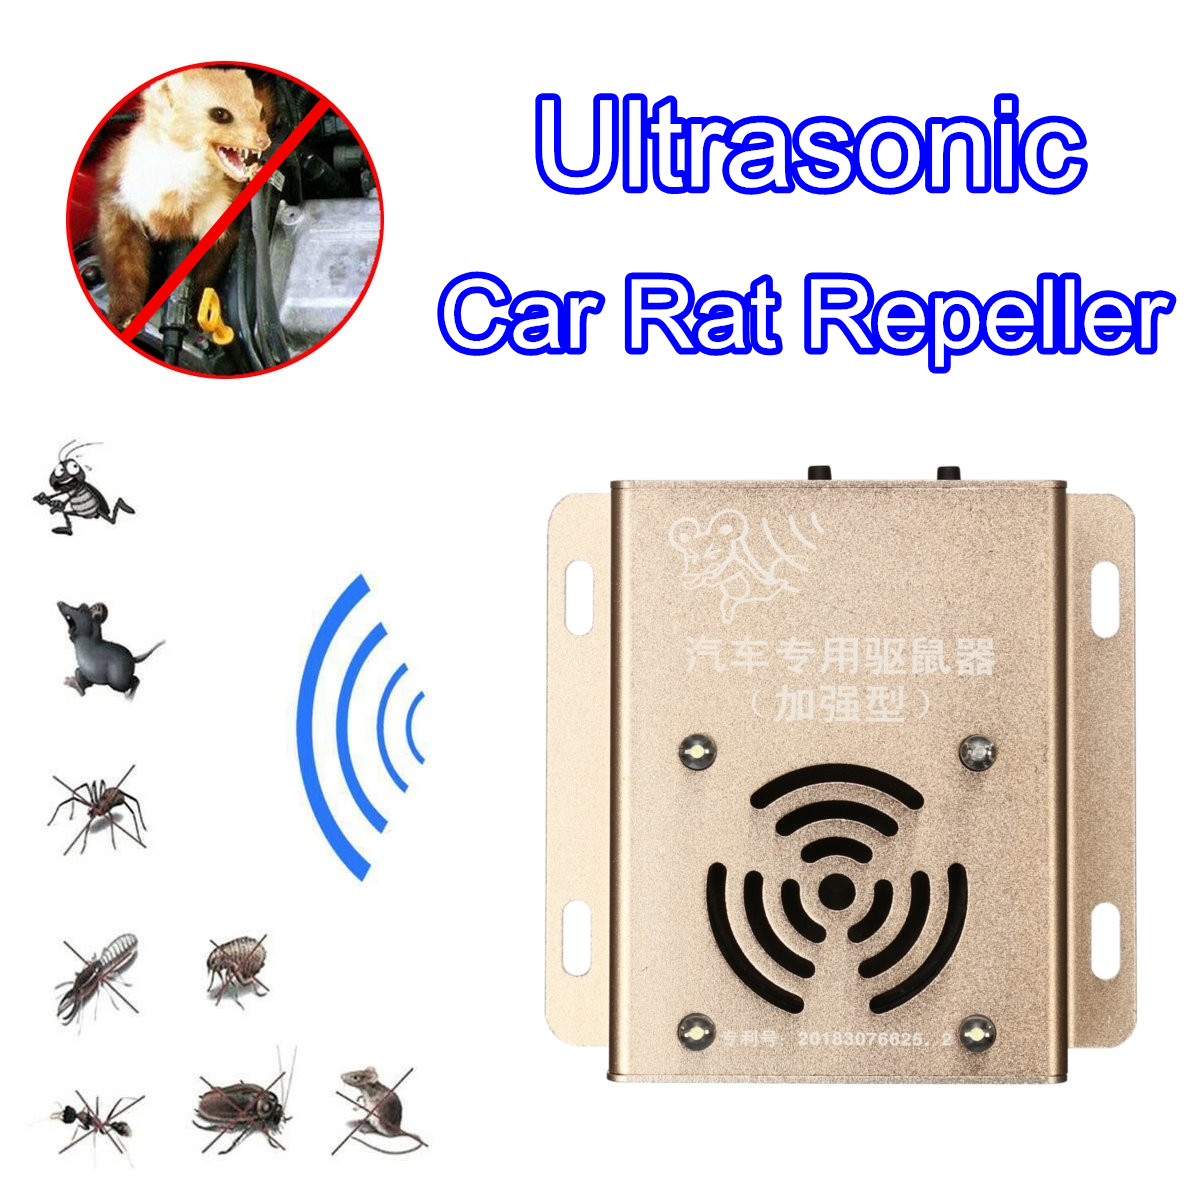 12V-Ultrasonic-Auto-Car-Mouse-Repeller-Vehicle-Rat-Rodent-Pest-Animal-Deterrent-Animal-Repeller-1521890